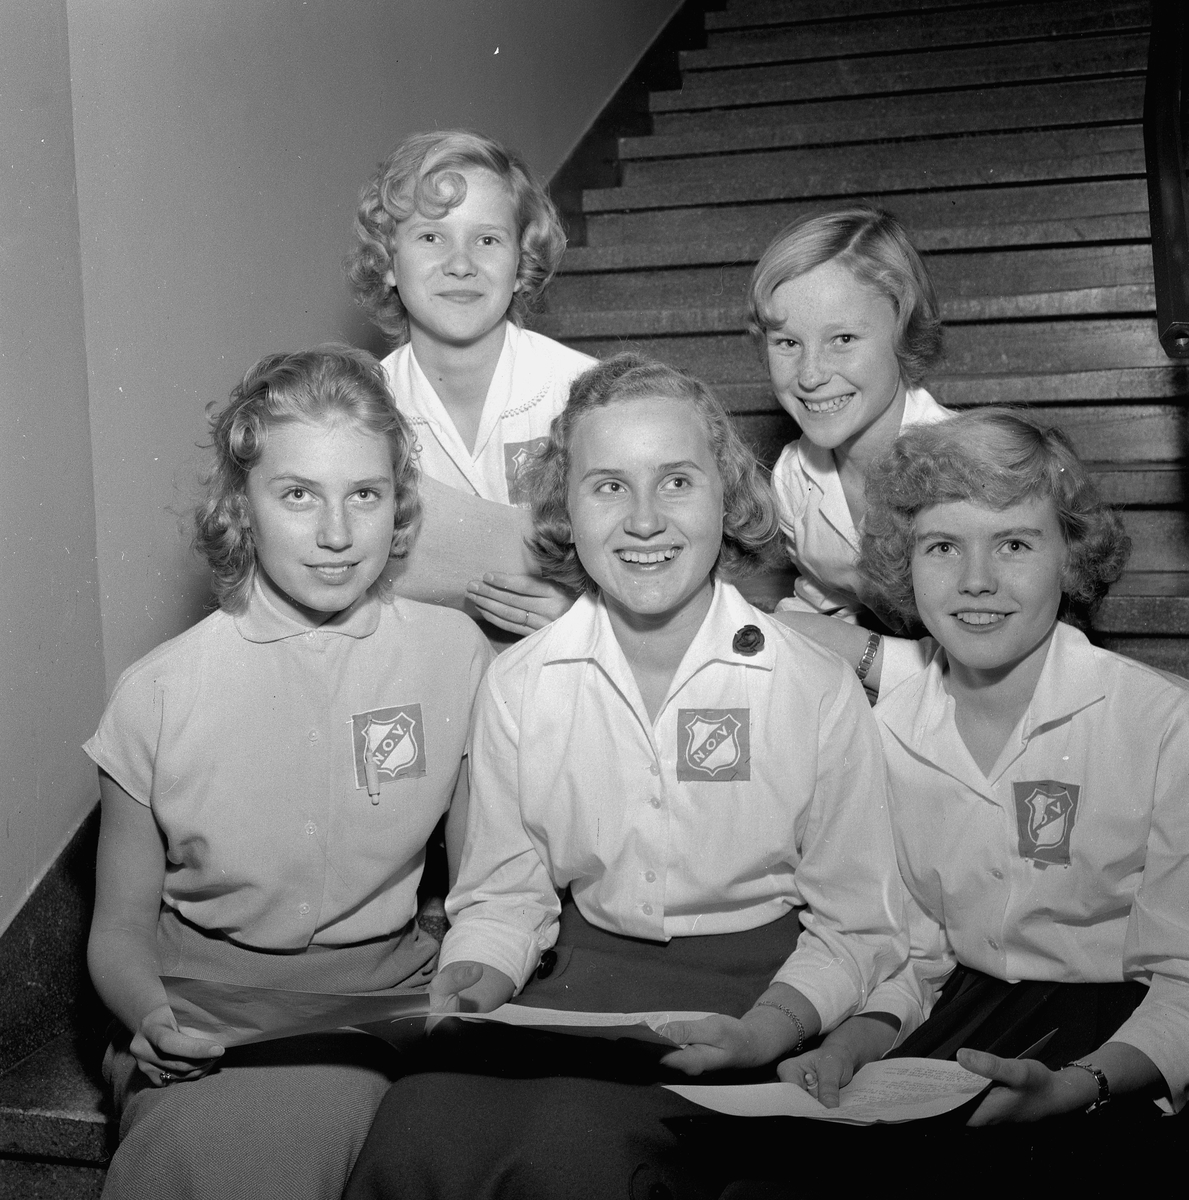 NOV-flickor på arbetarmöte.
November 1956.